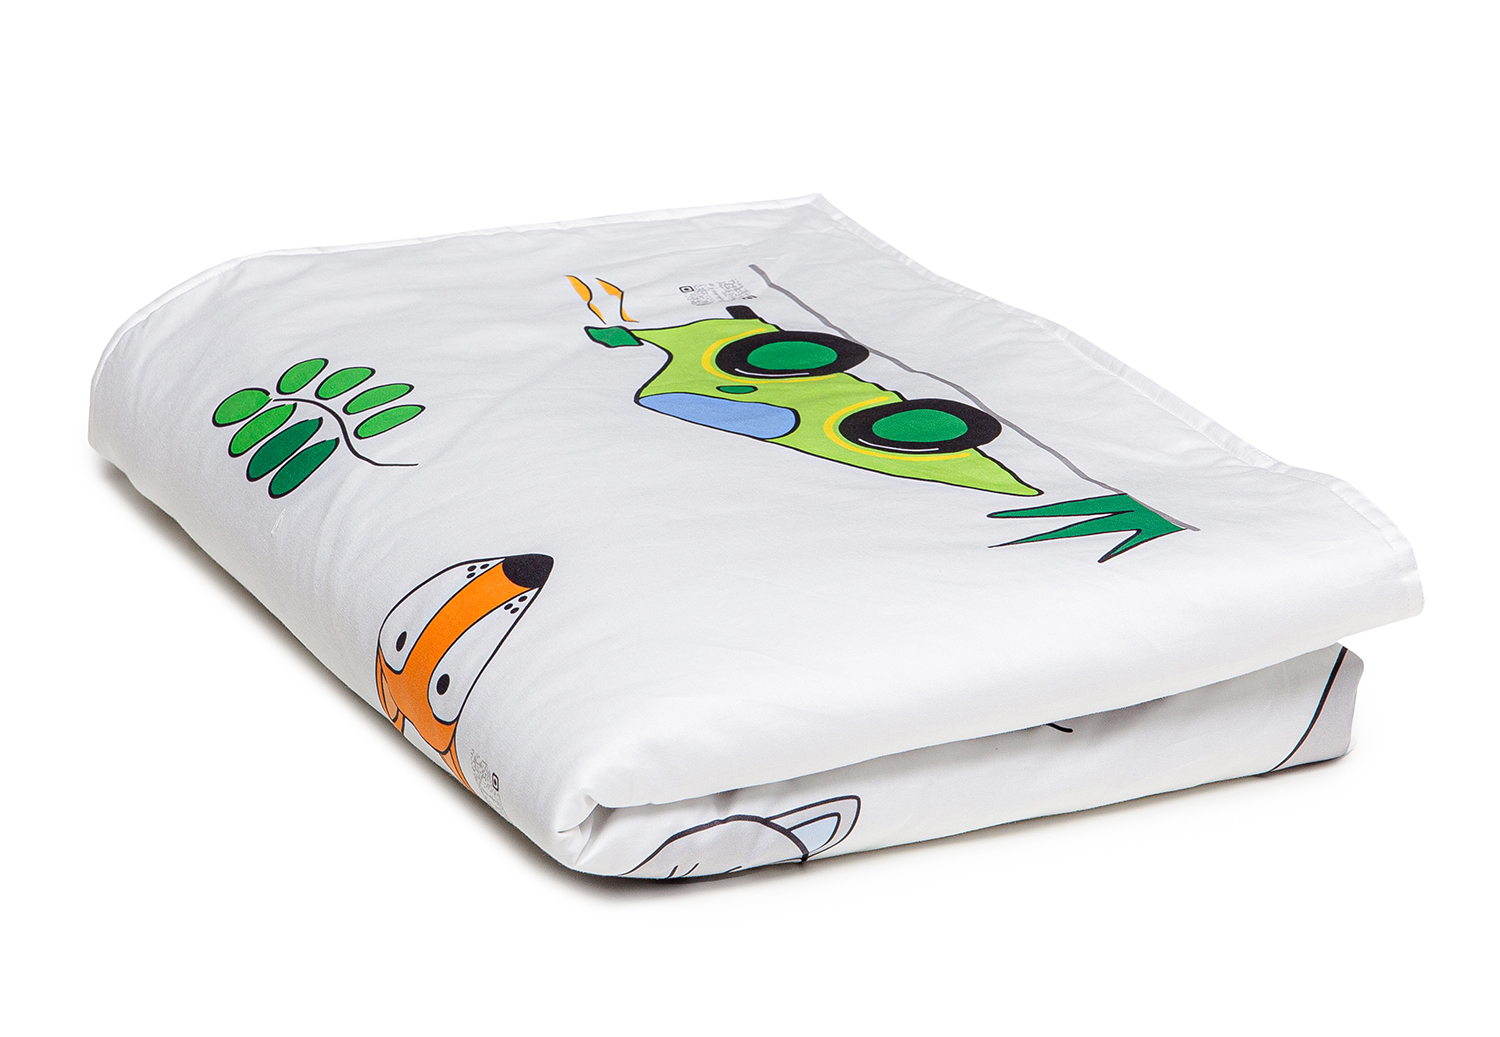 Kajka - говорящее постельное белье для деток